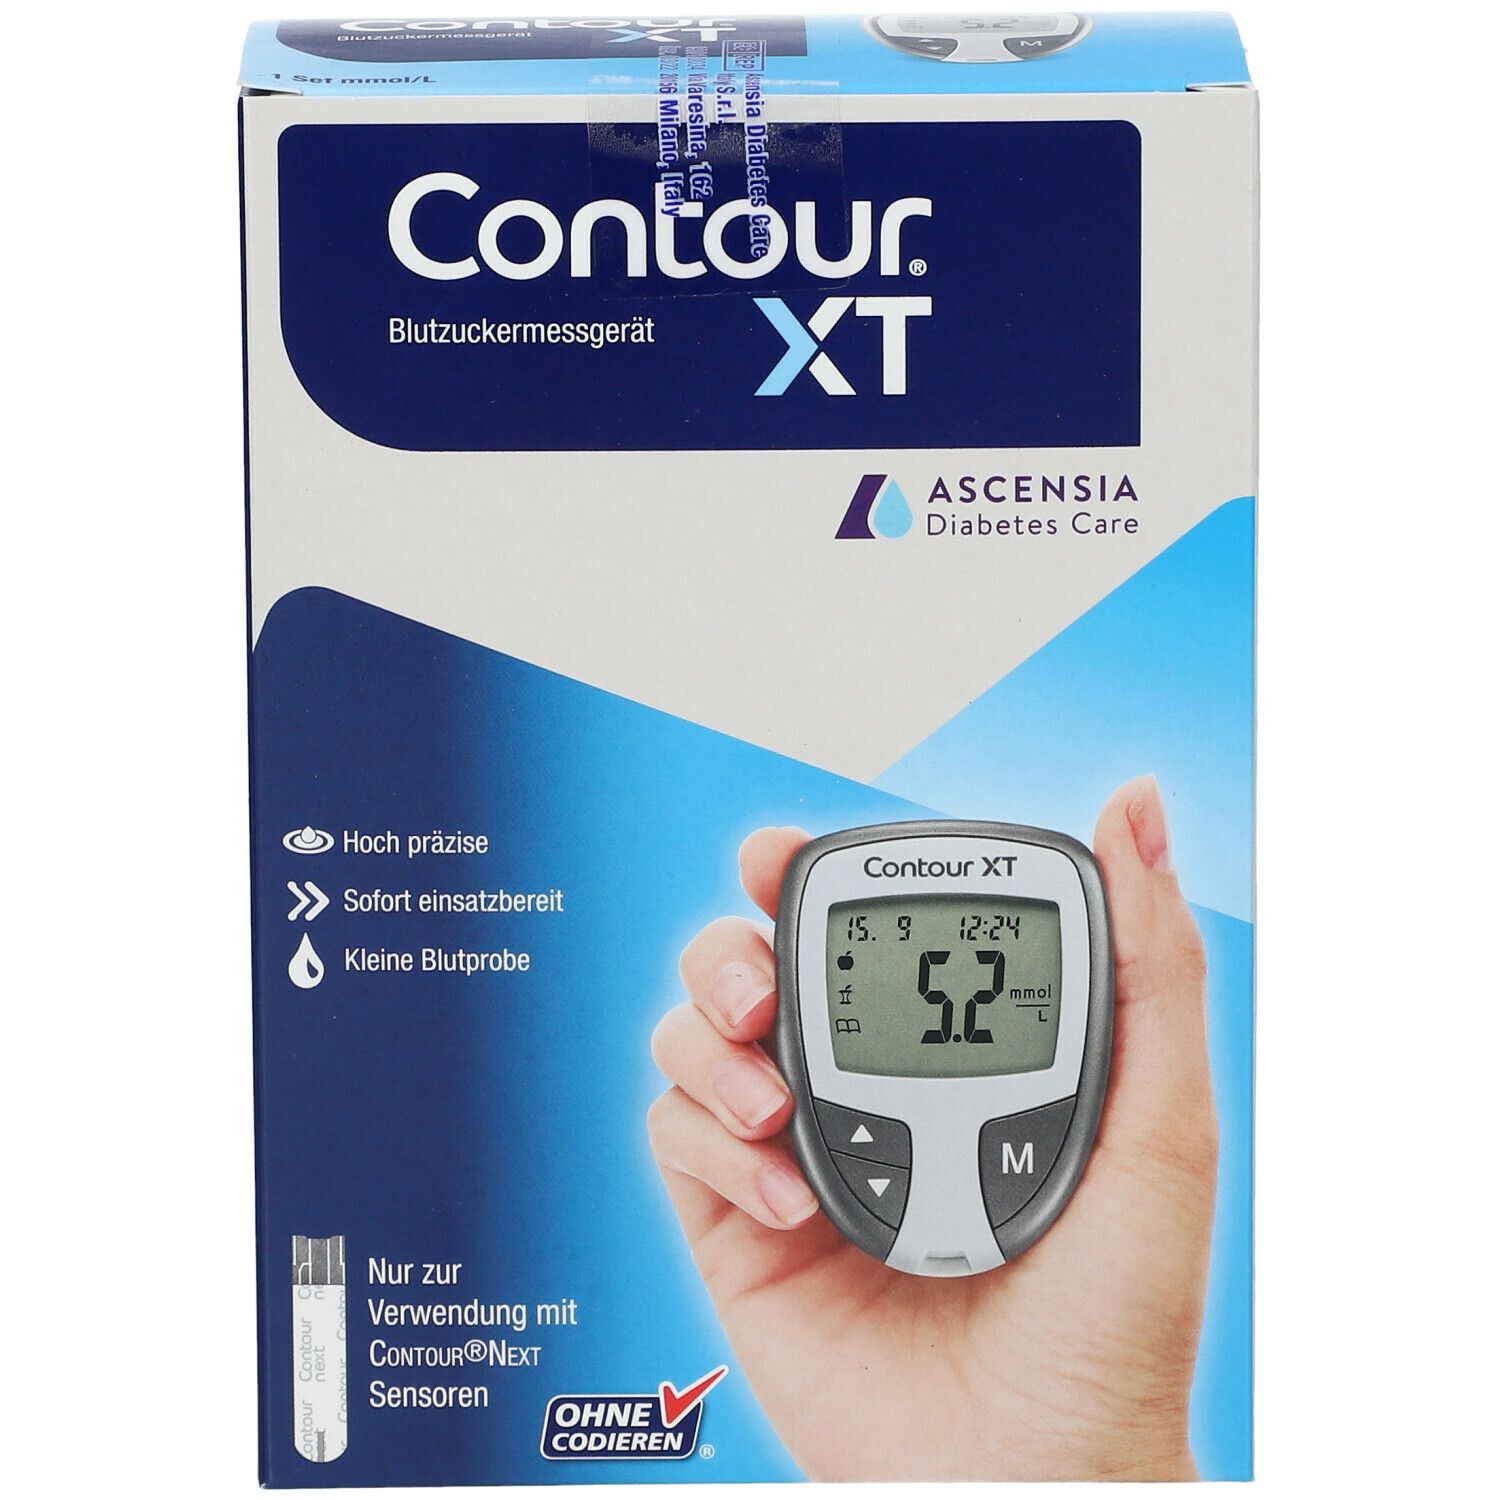 CONTOUR® XT Set mmol/l Blutzuckermessgerät